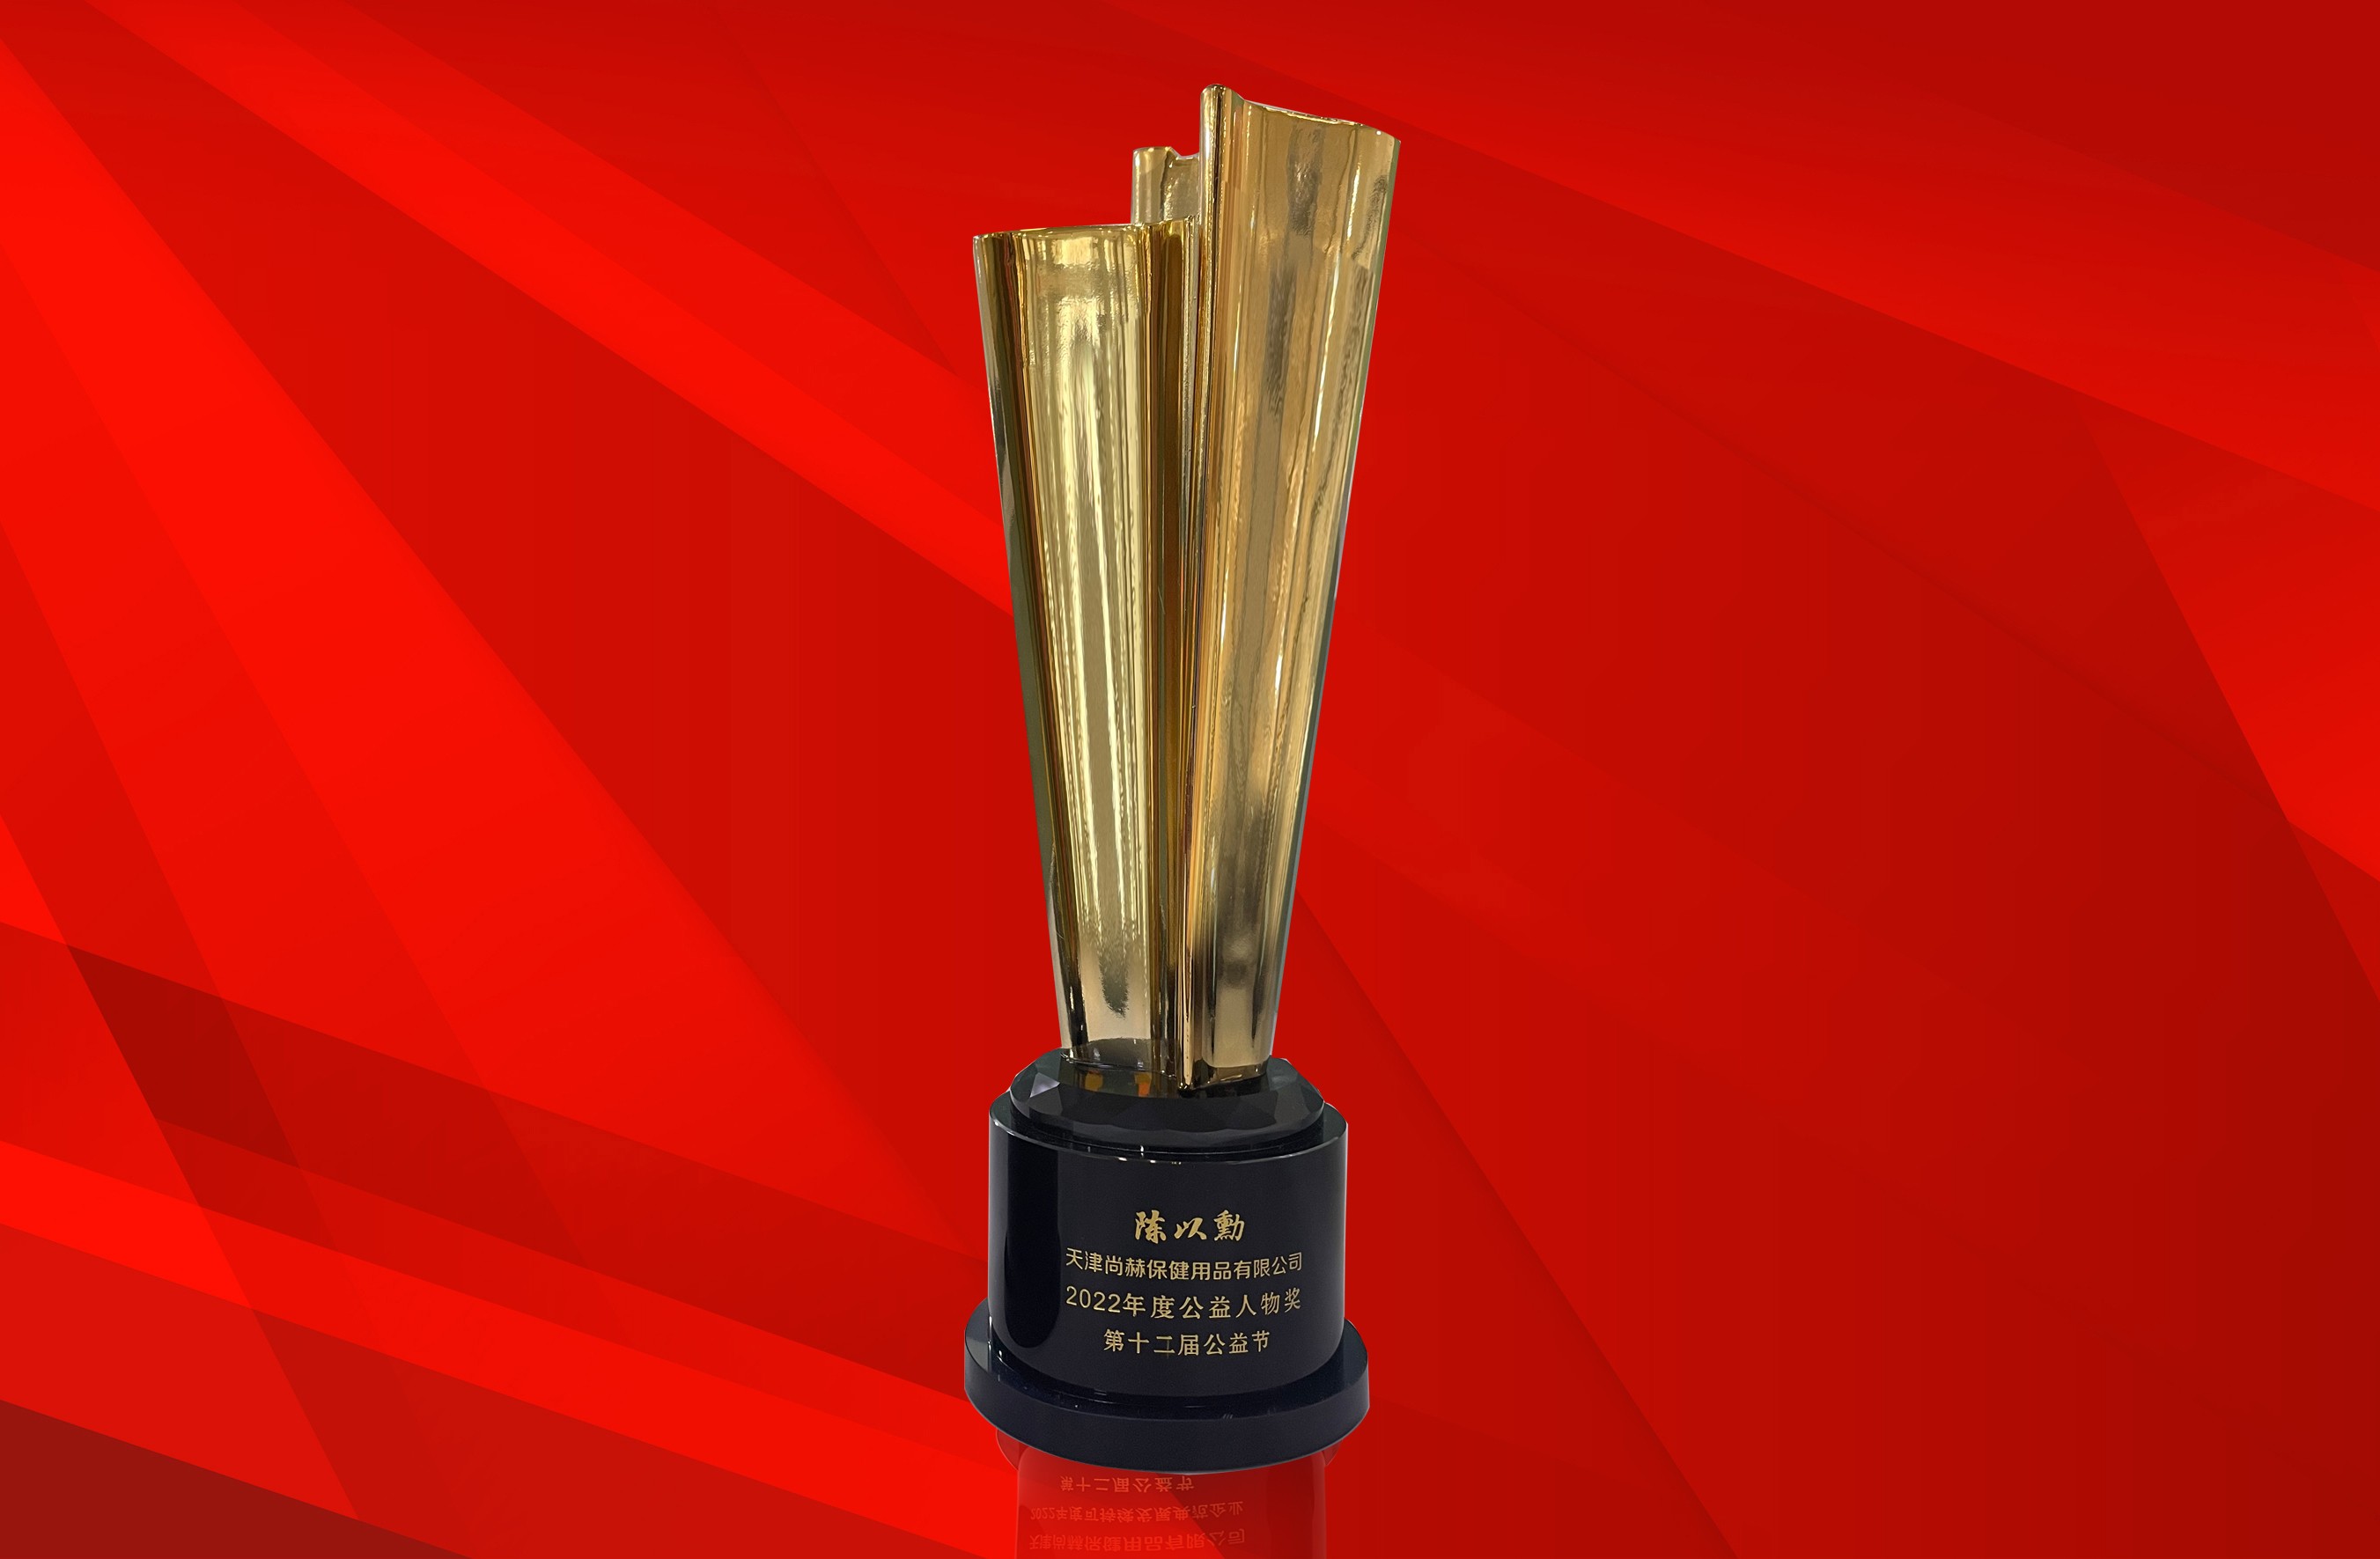 2022年12月-尊龙体育国际(中国)科技有限公司荣获-第十二届公益节“年度可持续发展典范企业奖”